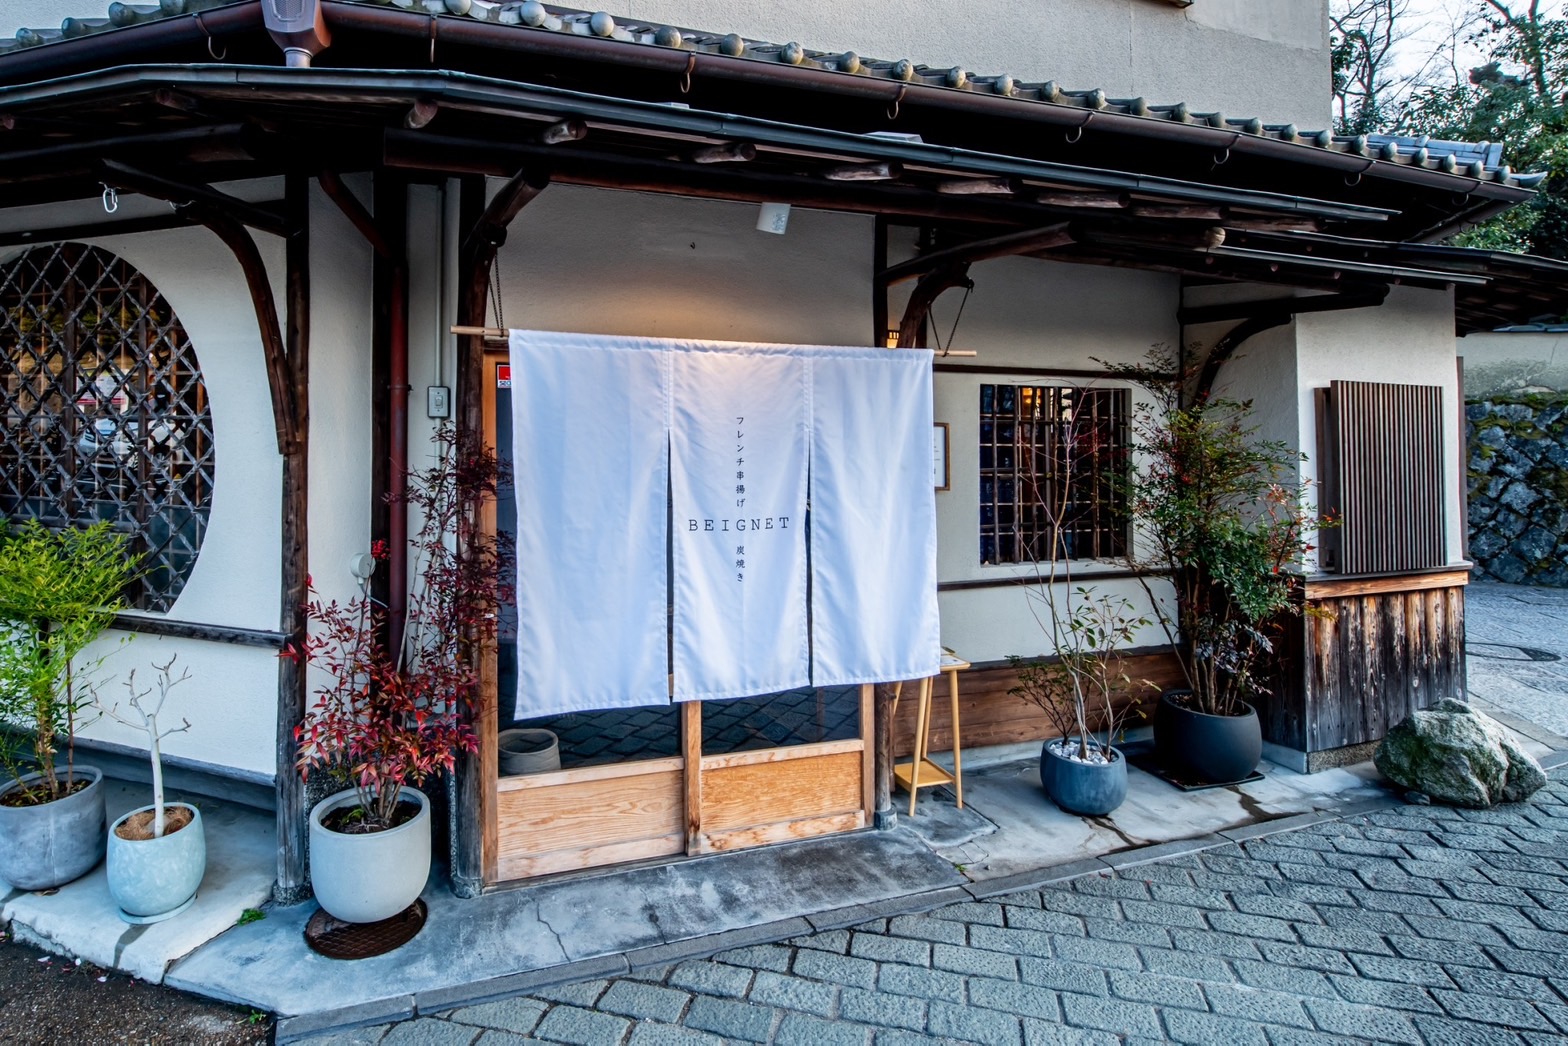 2022年12月16日フレンチ串揚げ・炭焼きBEIGNET京都高台寺を開業いたしました。